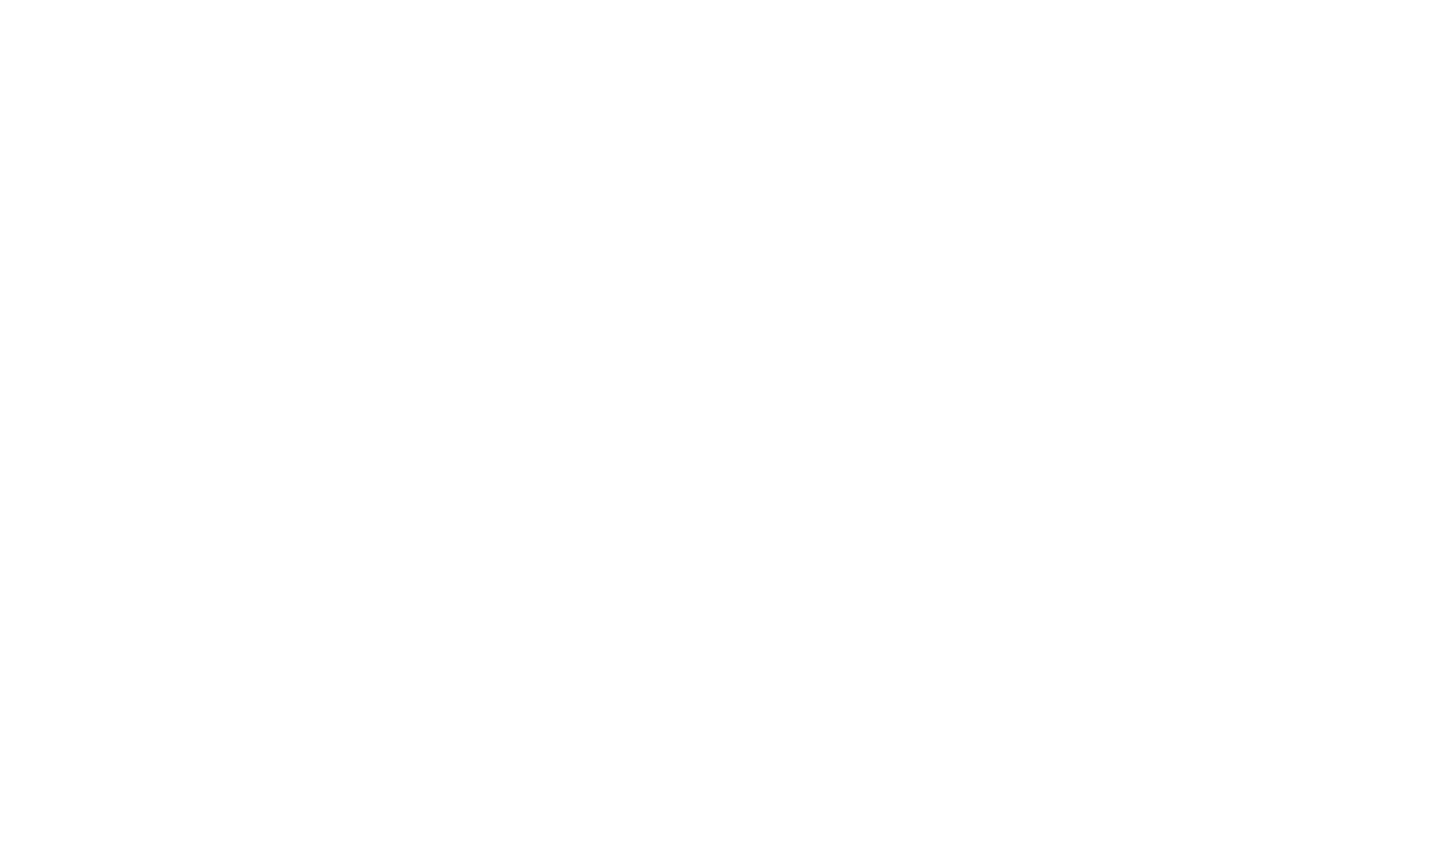 StoneCo logo pour fonds sombres (PNG transparent)